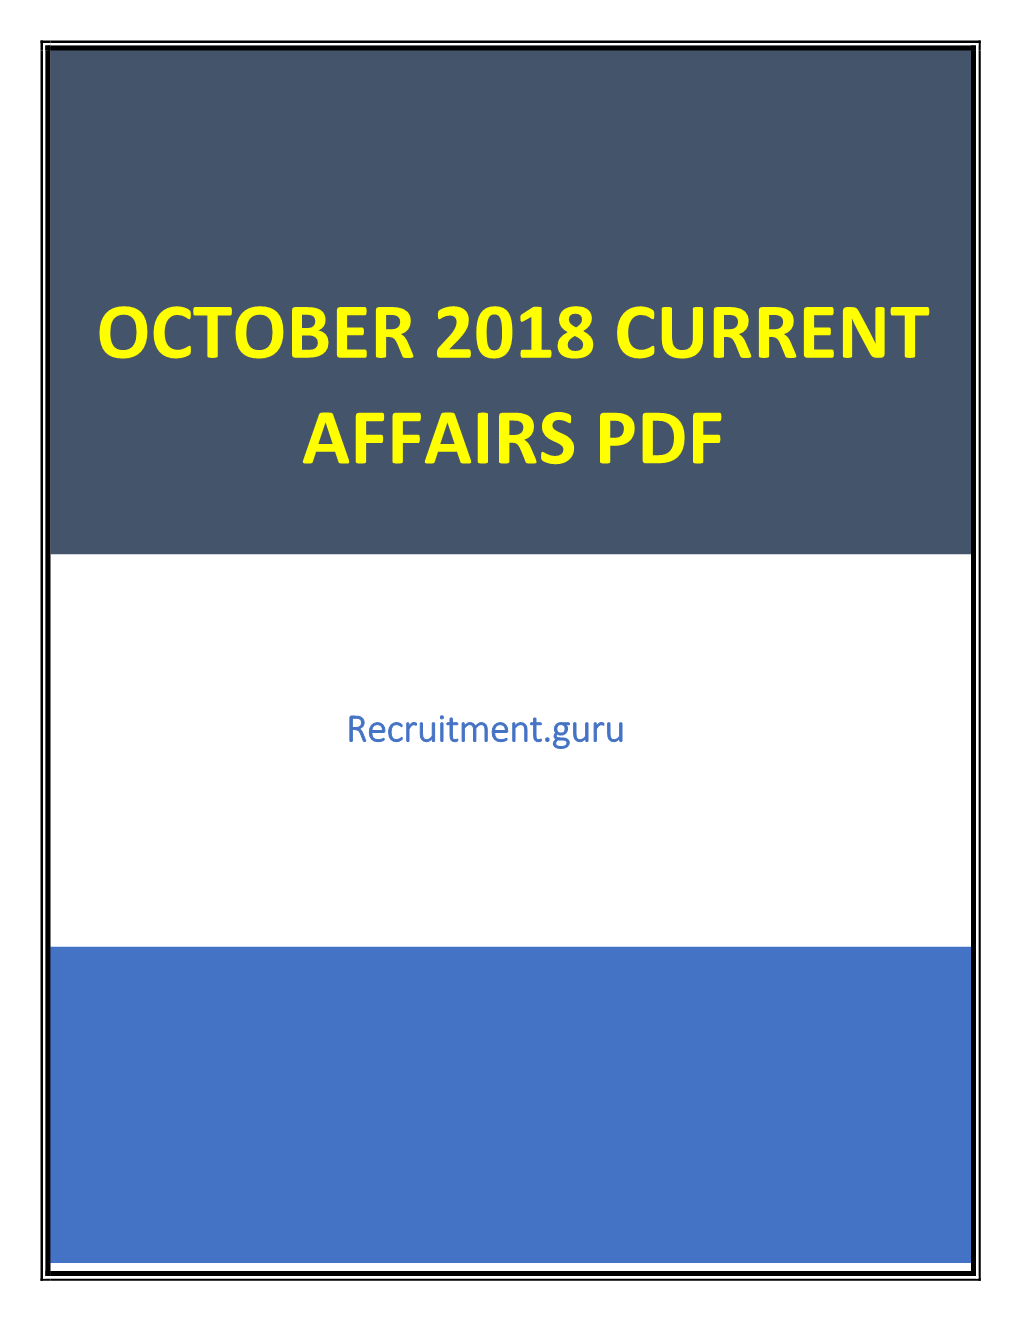 October 2018 Current Affairs Pdf